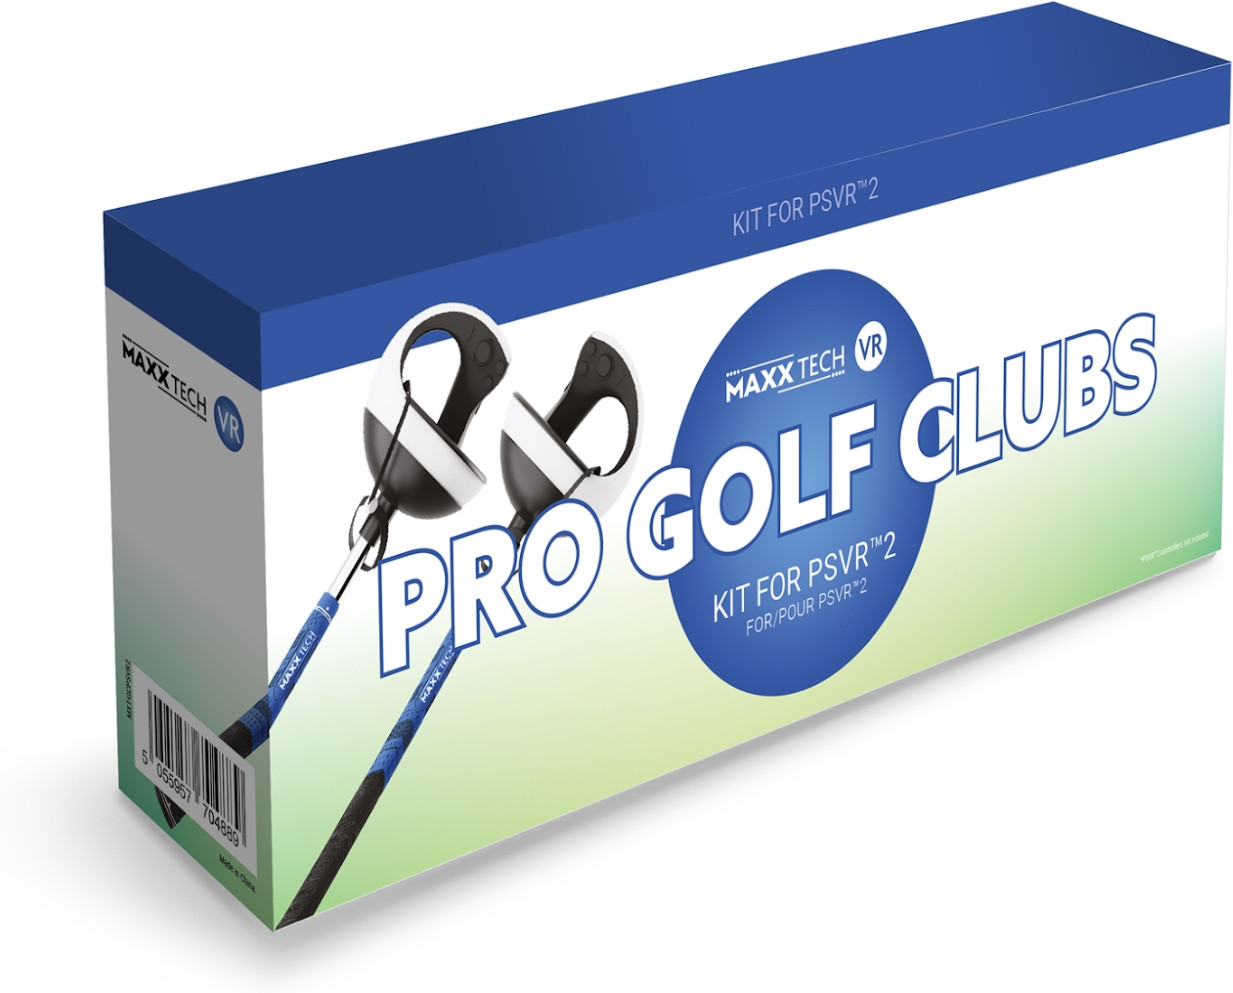 Maxxtech VR Pro Golf Clubs Kit (PSVR2)